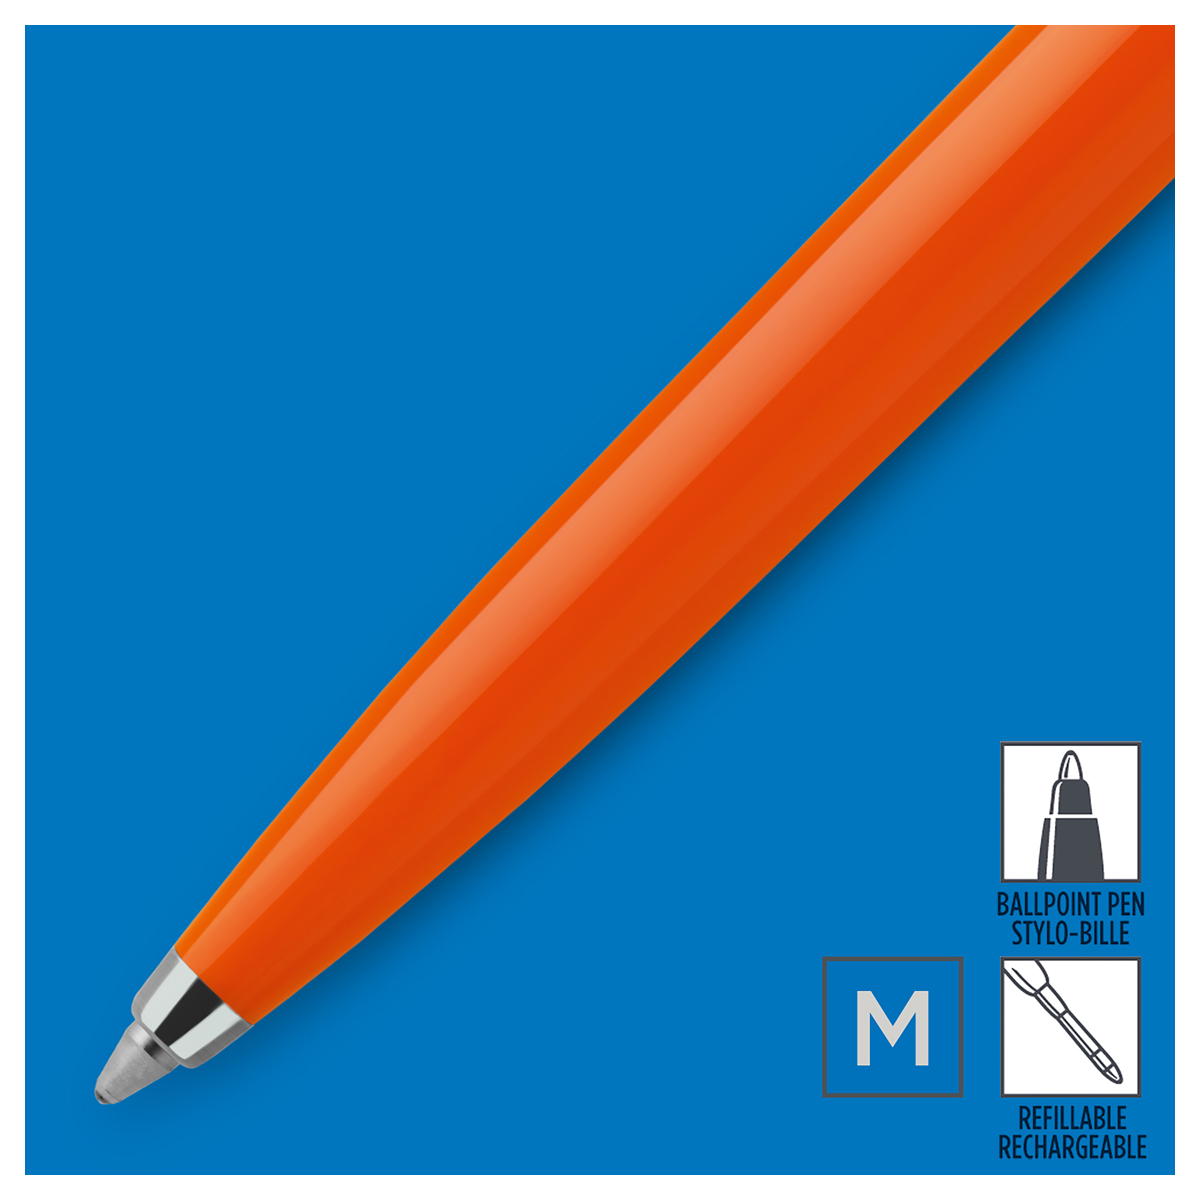 Ручка шариковая Parker "Jotter Orange CT" синяя, 1,0мм, кнопочн., пластик. корпус, блистер